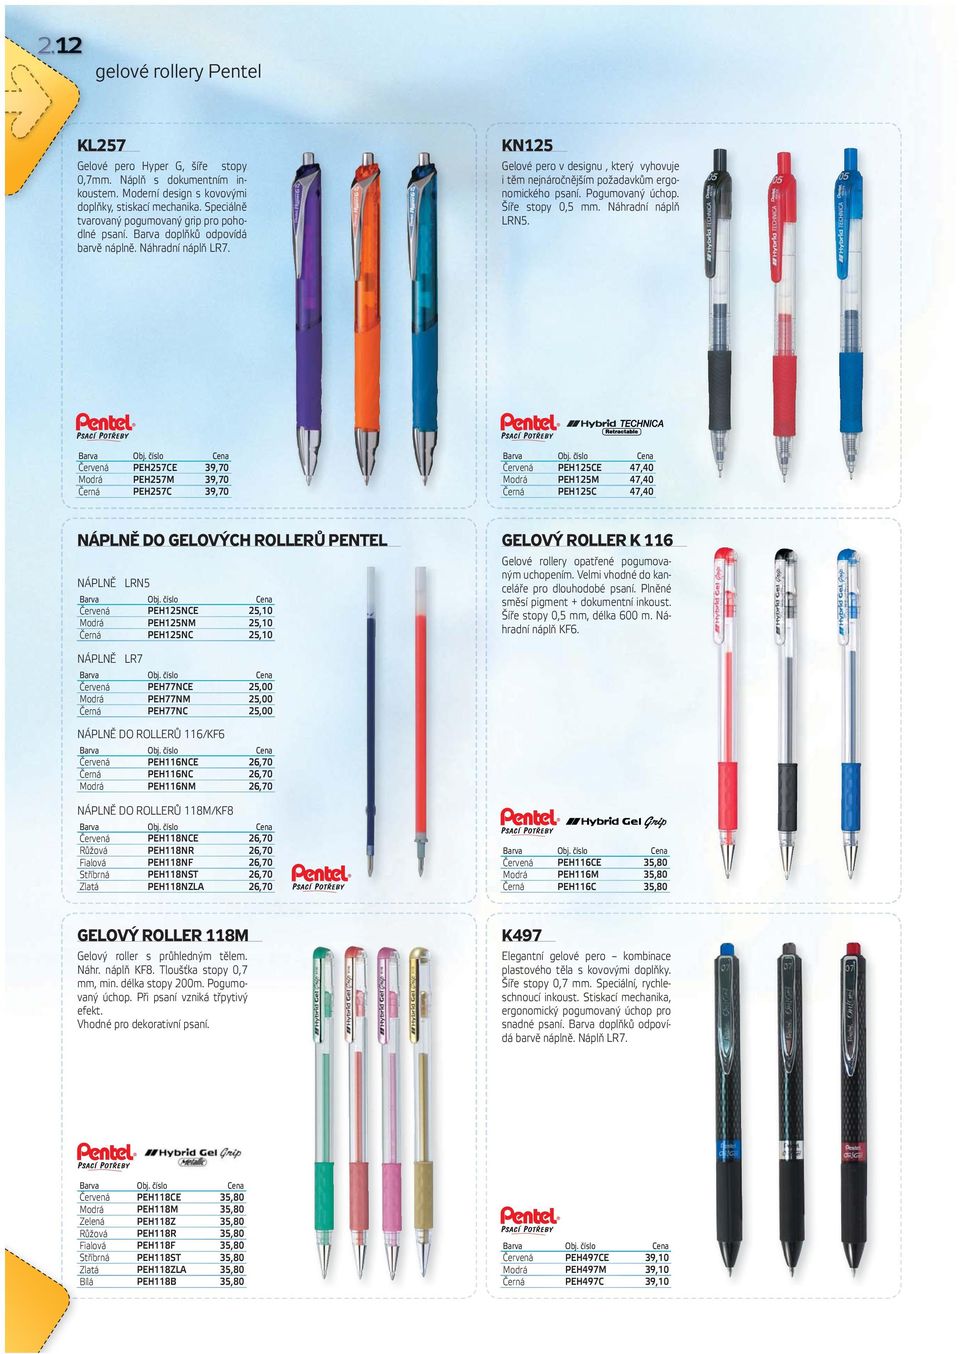 KN125 Gelové pero v designu, který vyhovuje i těm nejnáročnějším požadavkům ergonomického psaní. Pogumovaný úchop. Šíře stopy 0,5 mm. Náhradní náplň LRN5.